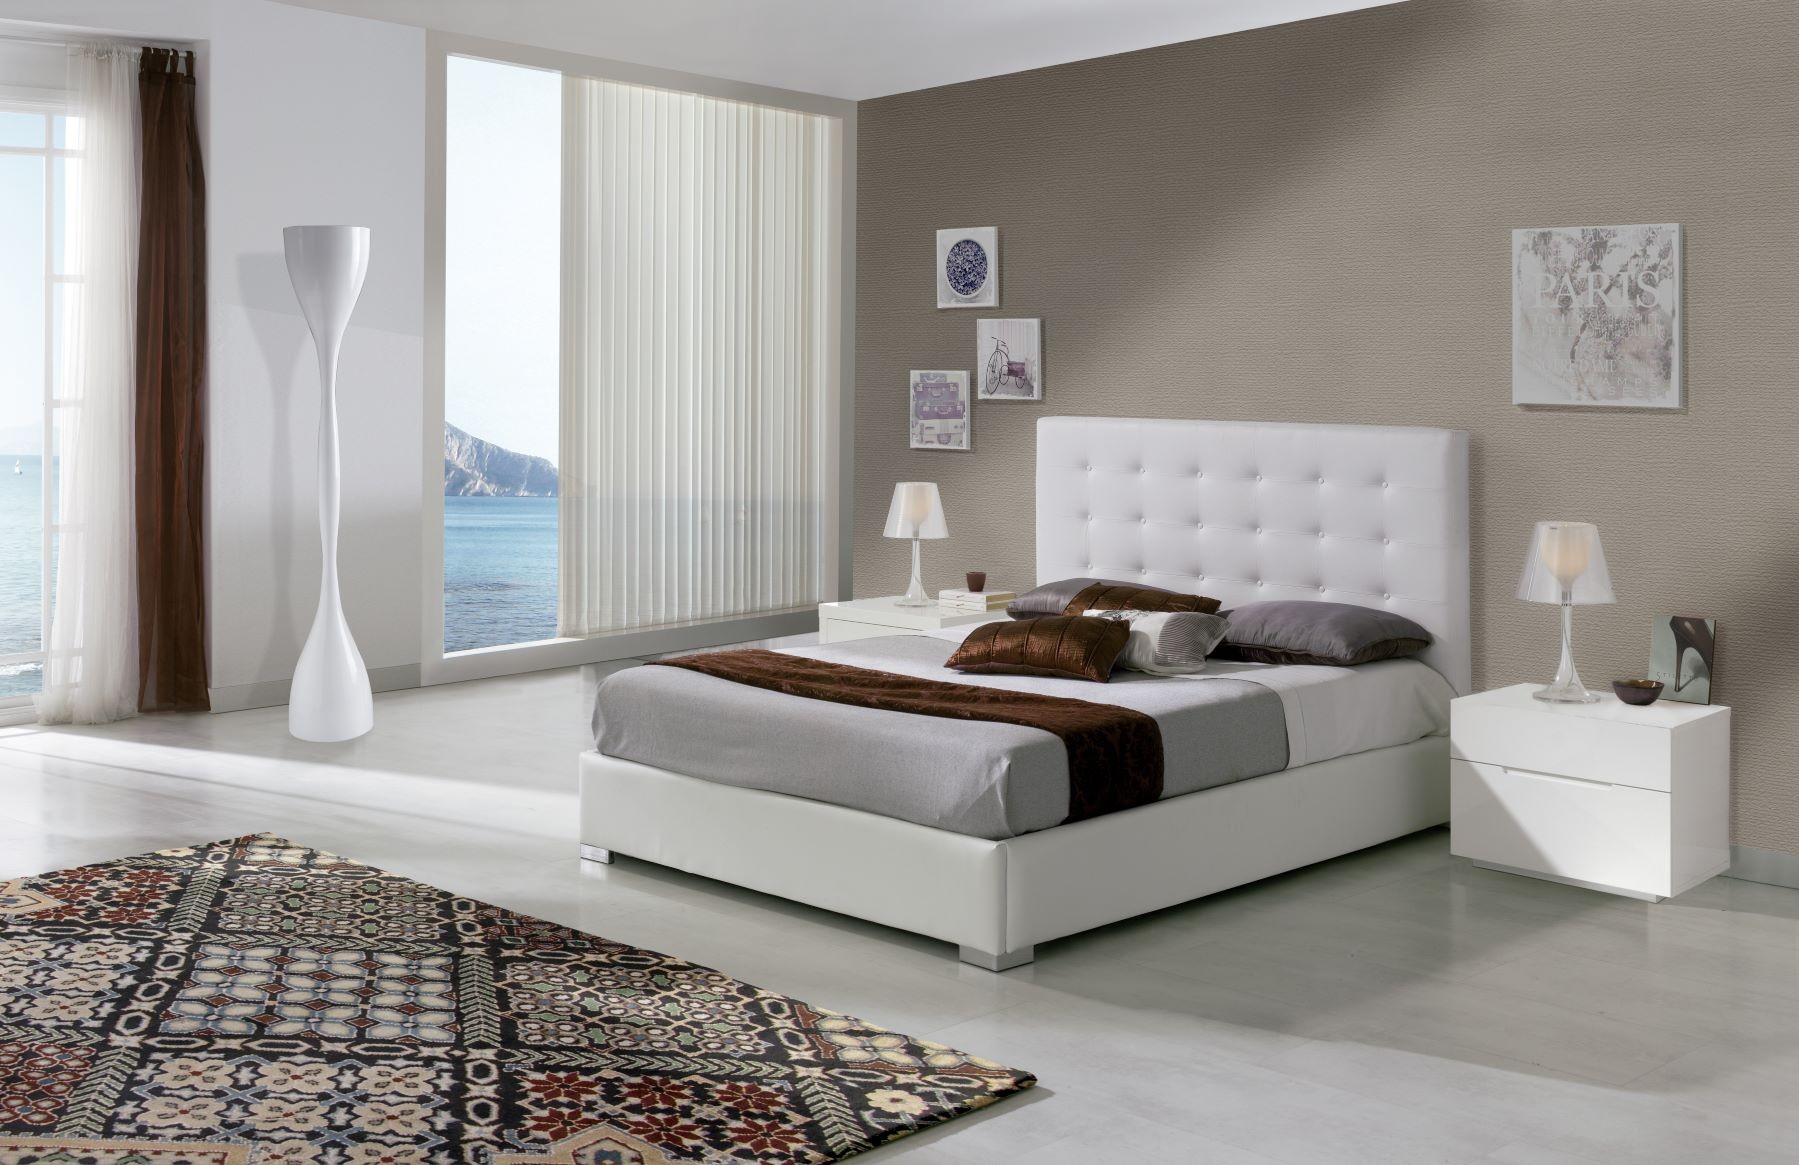 Estila Kožená designová postel Eva s vysokým čelem s chesterfield prošíváním bílé barvy 90-180cm